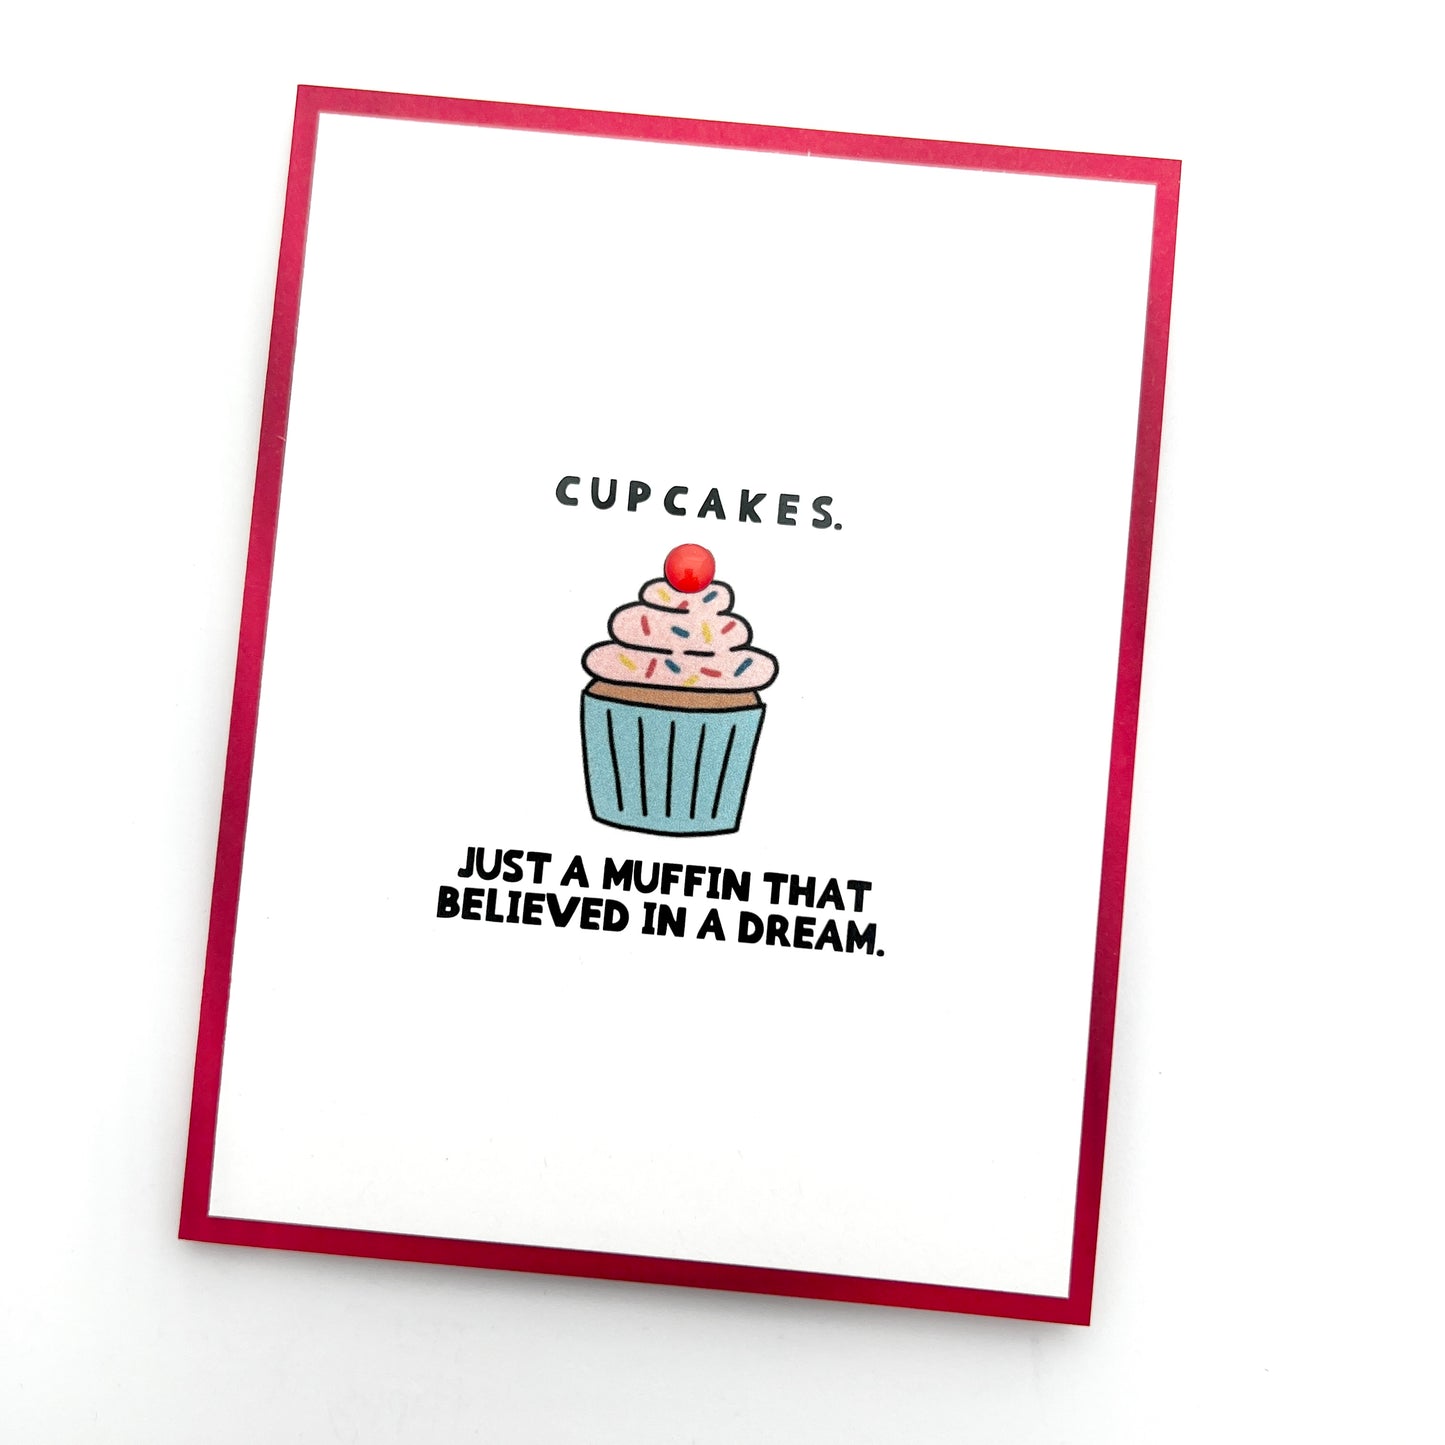 Cupcakes Muffin Believed in a Dream card